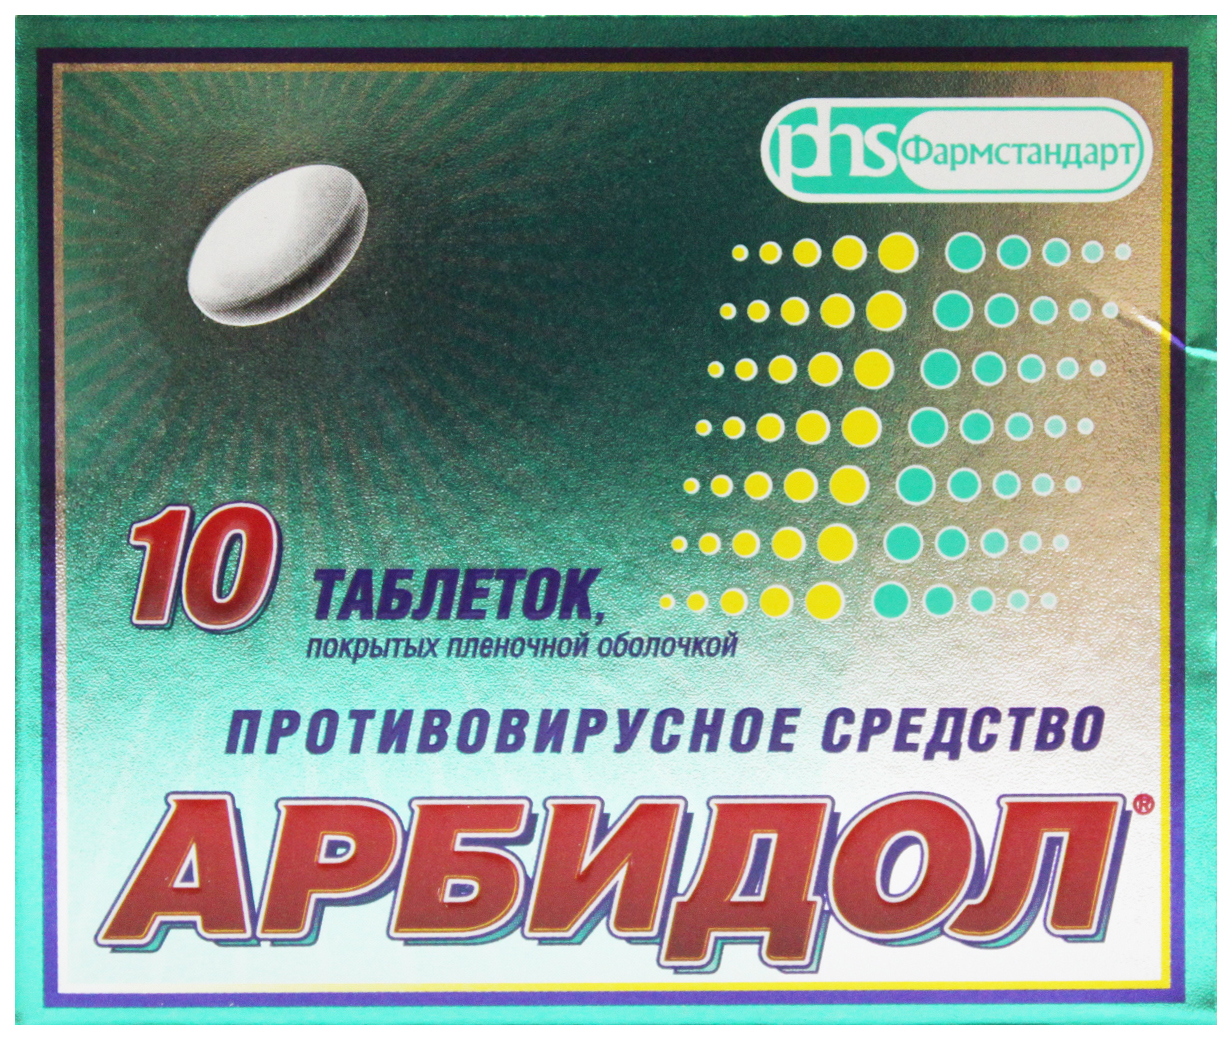 Купить Арбидол Фармстандарт таблетки 50 мг 10 шт., Фармстандарт-Томскхимфарм